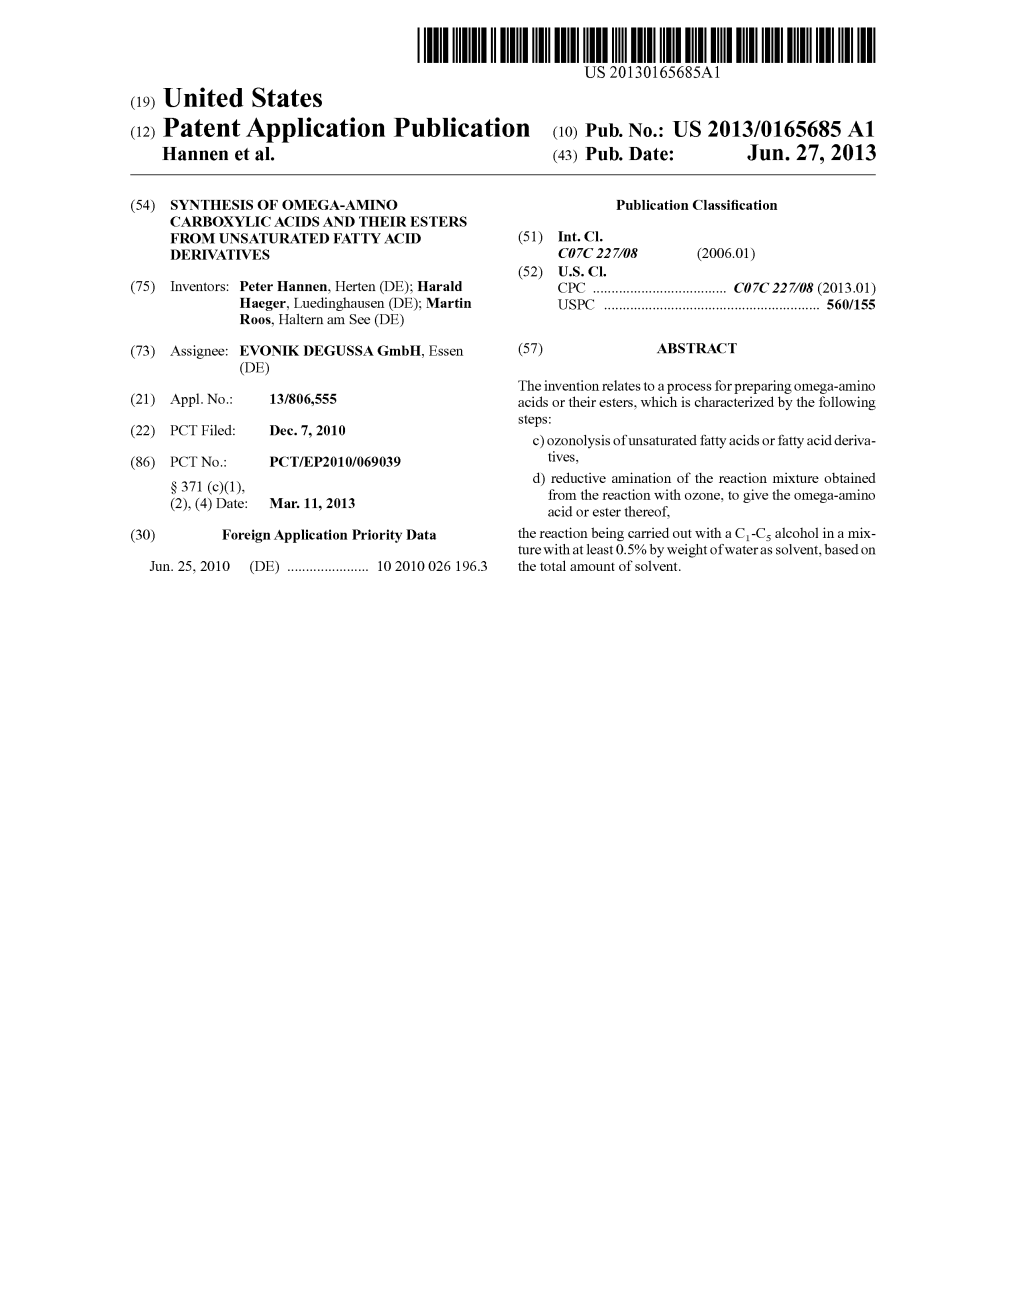 (12) Patent Application Publication (10) Pub. No.: US 2013/0165685 A1 Hannen Et Al